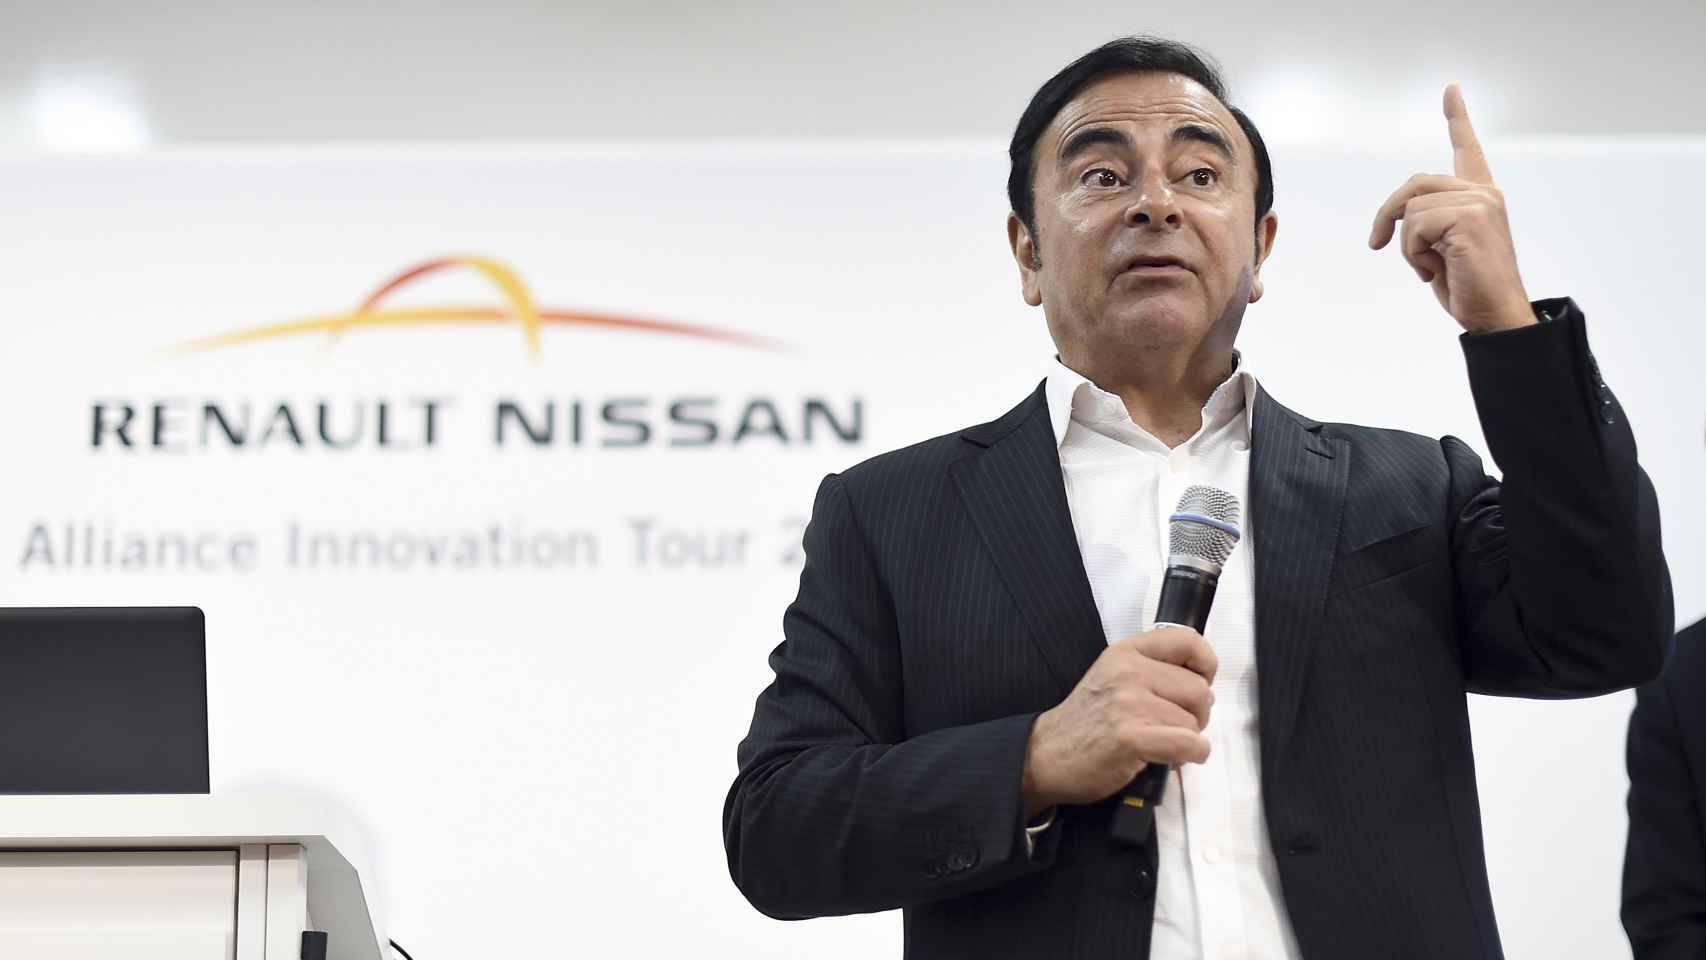 El expresidente de la alianza Renault Nissan, Carlos Ghosn